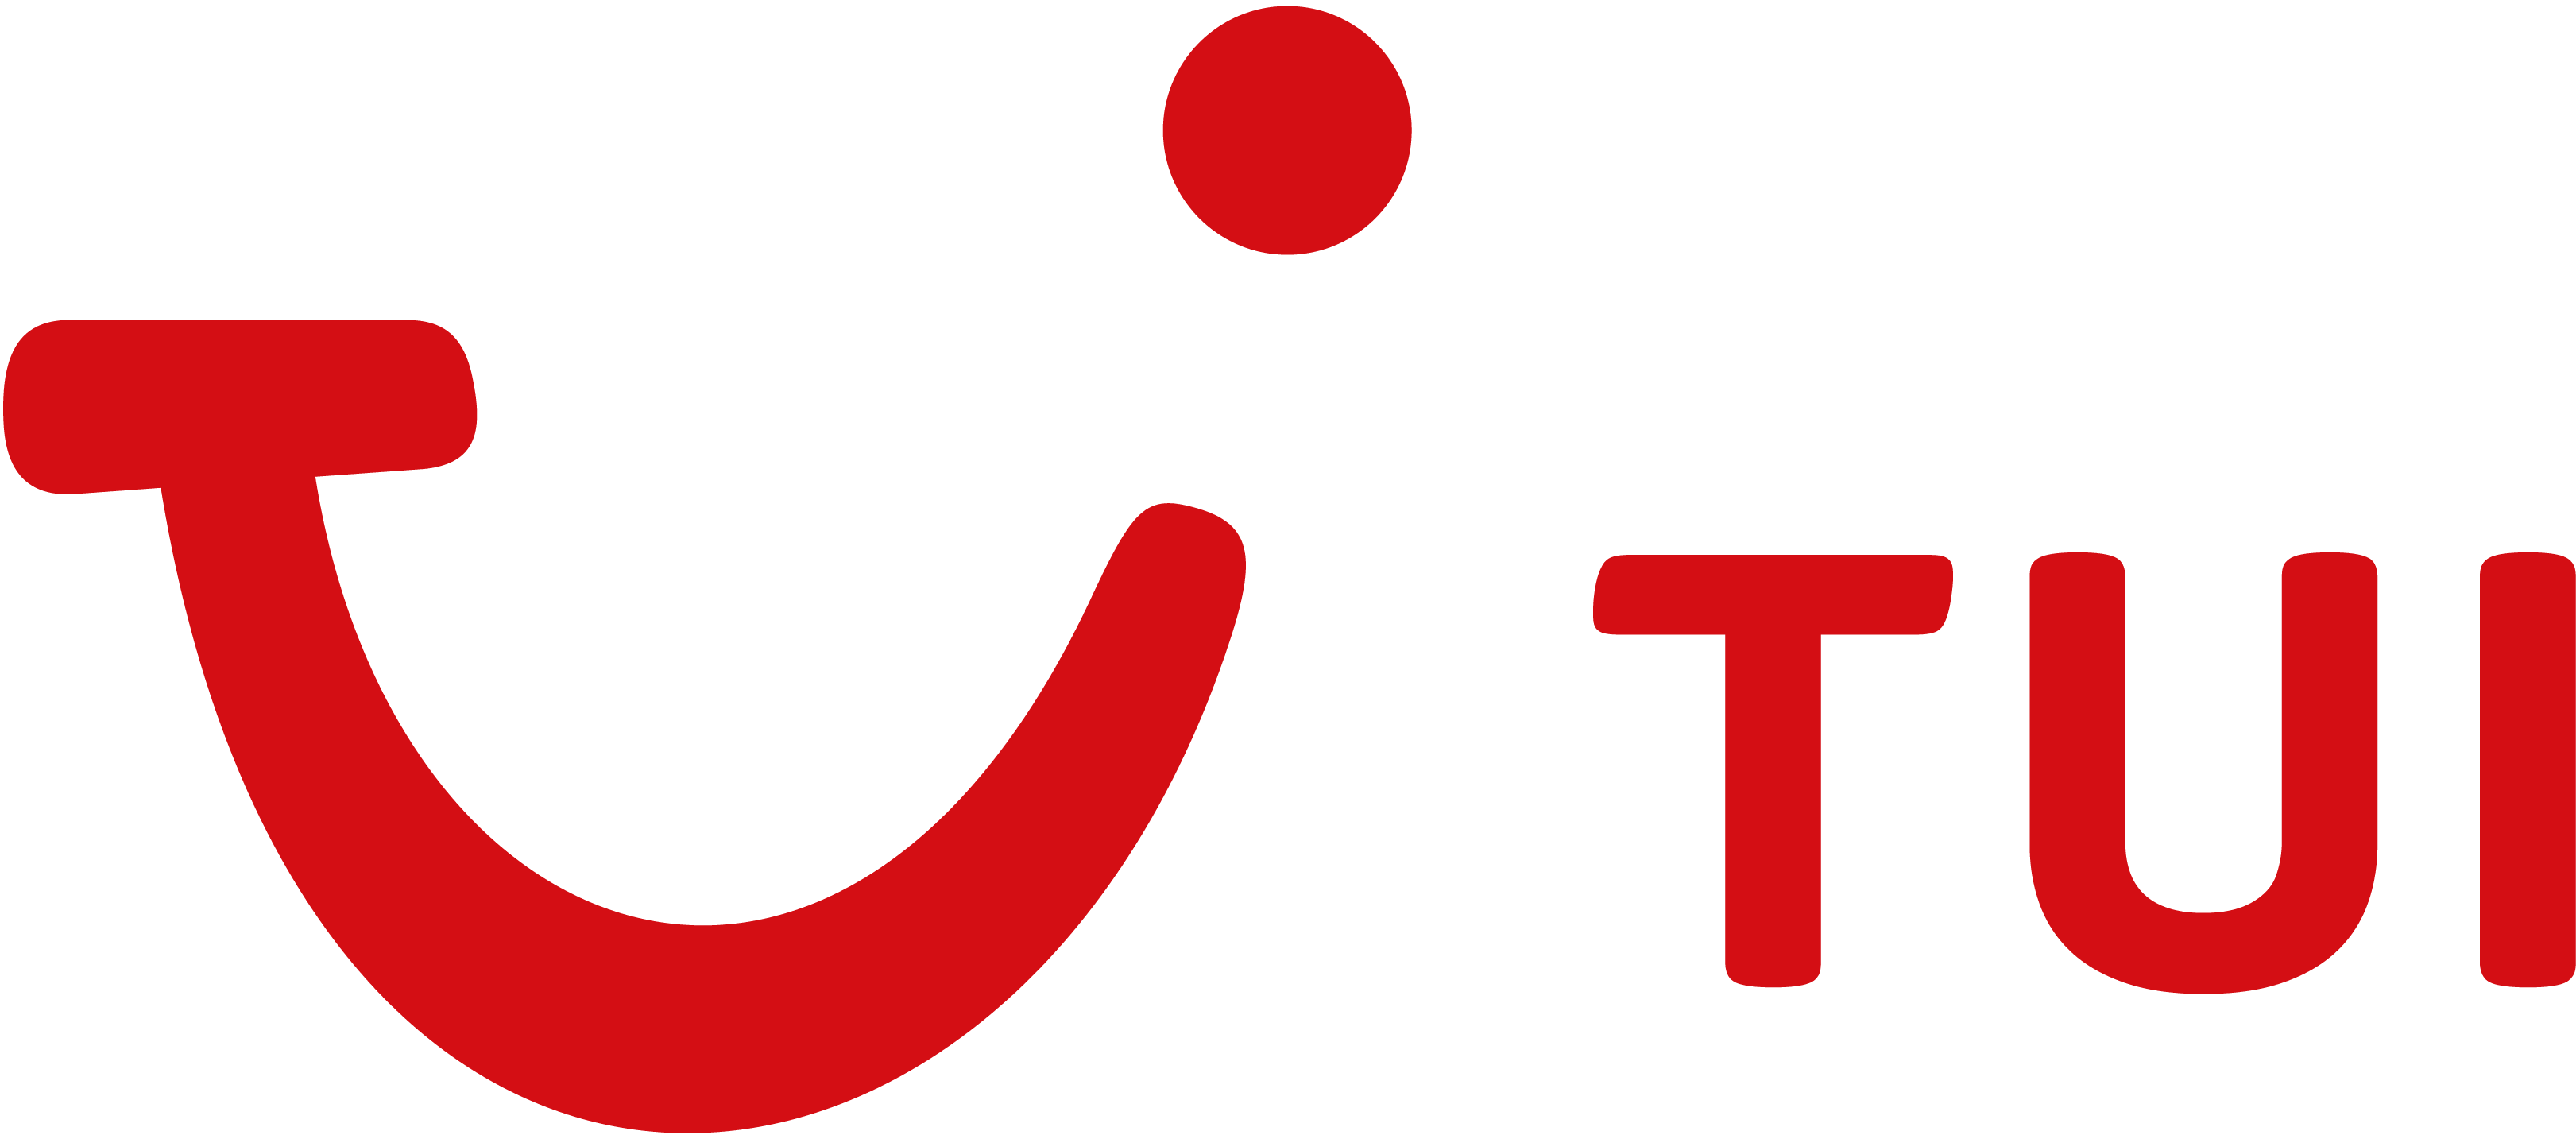 logo_tui